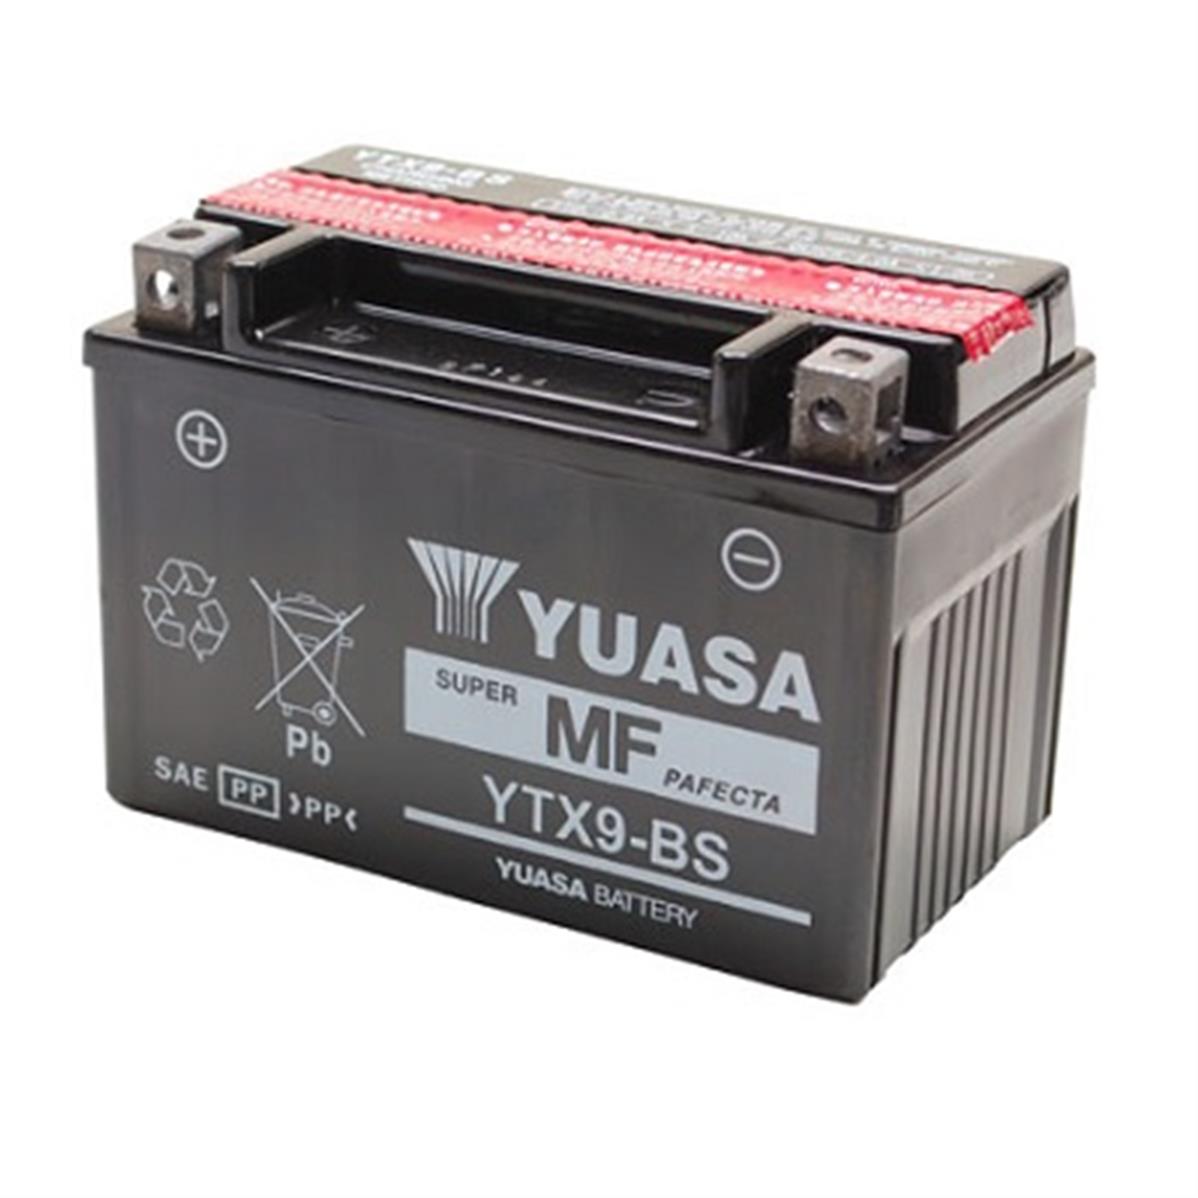 Yuasa Batterie benelli 125ccm VELVET 125 année-modèle 1999-2001 ytx9-bs